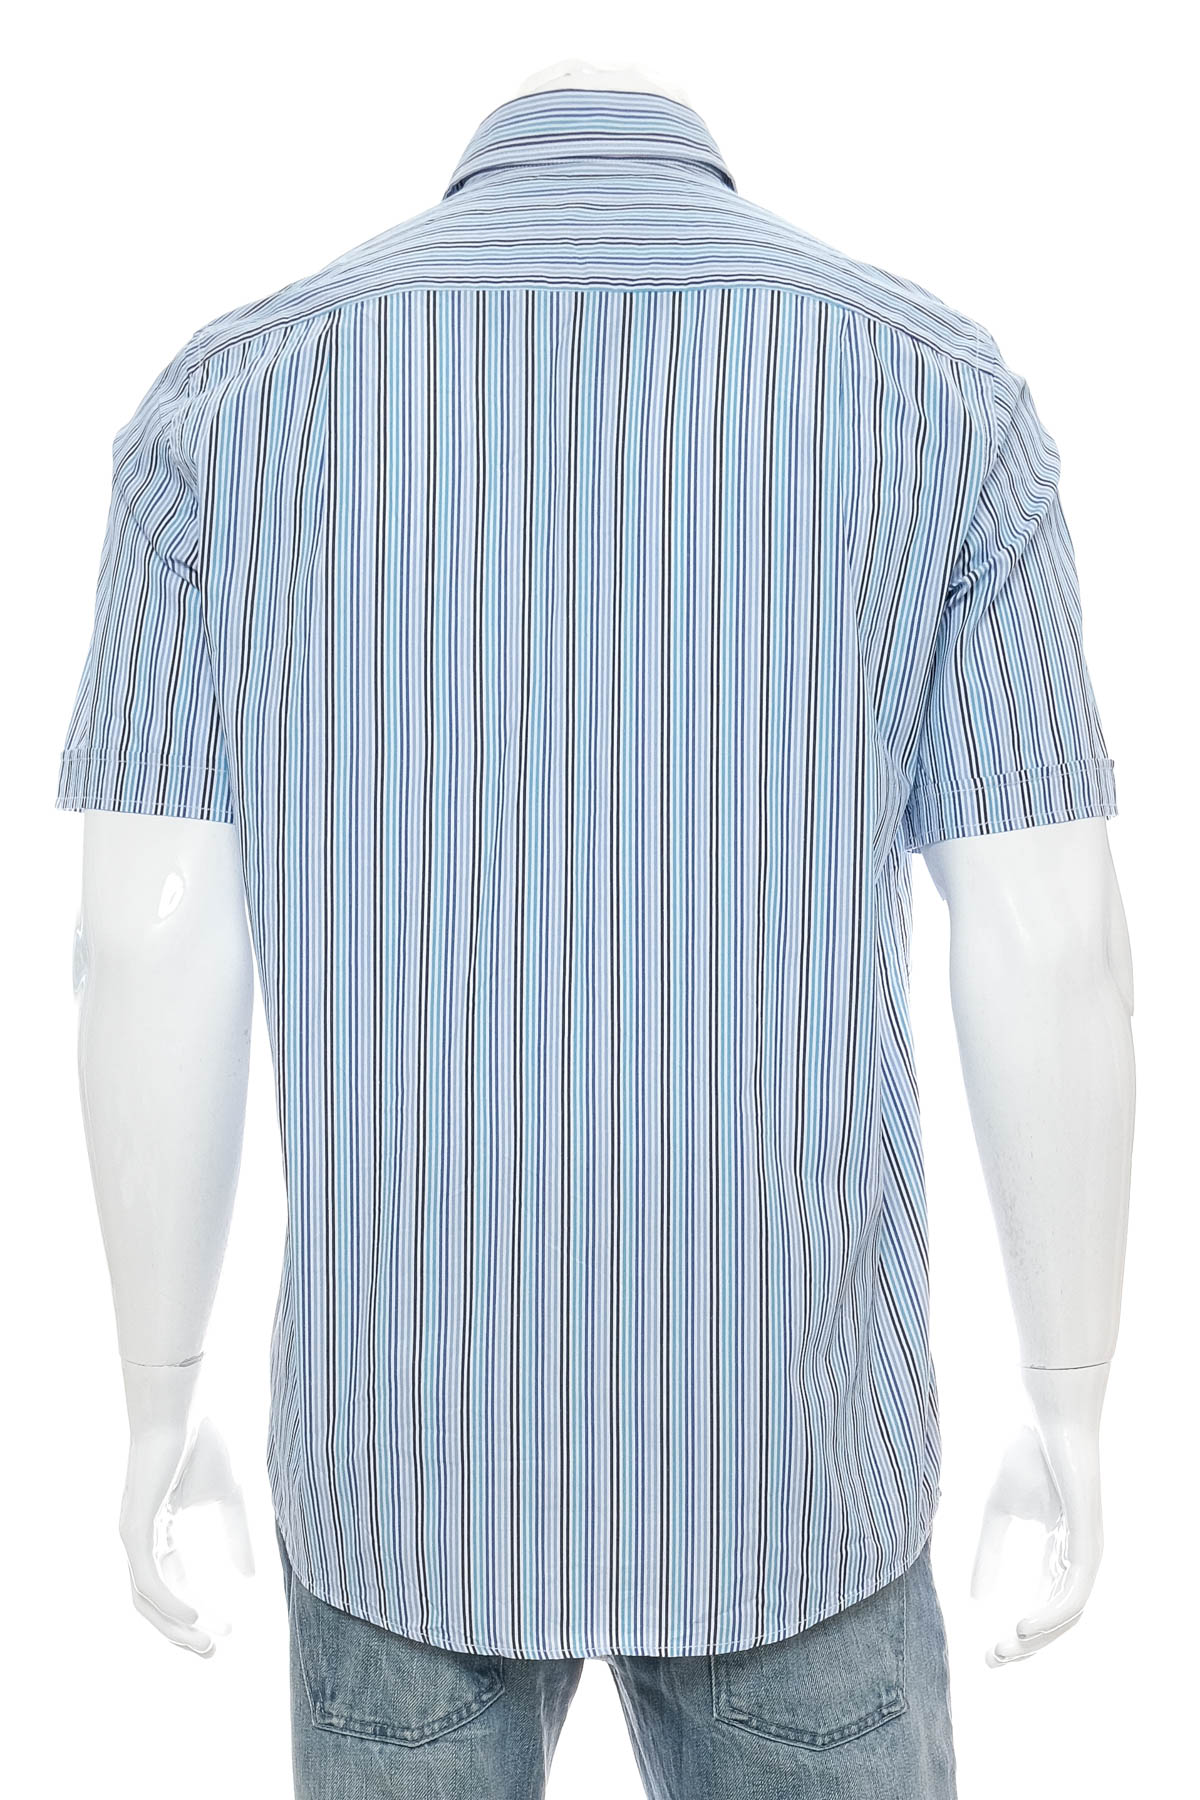 Ανδρικό πουκάμισο - Casa Moda - 1